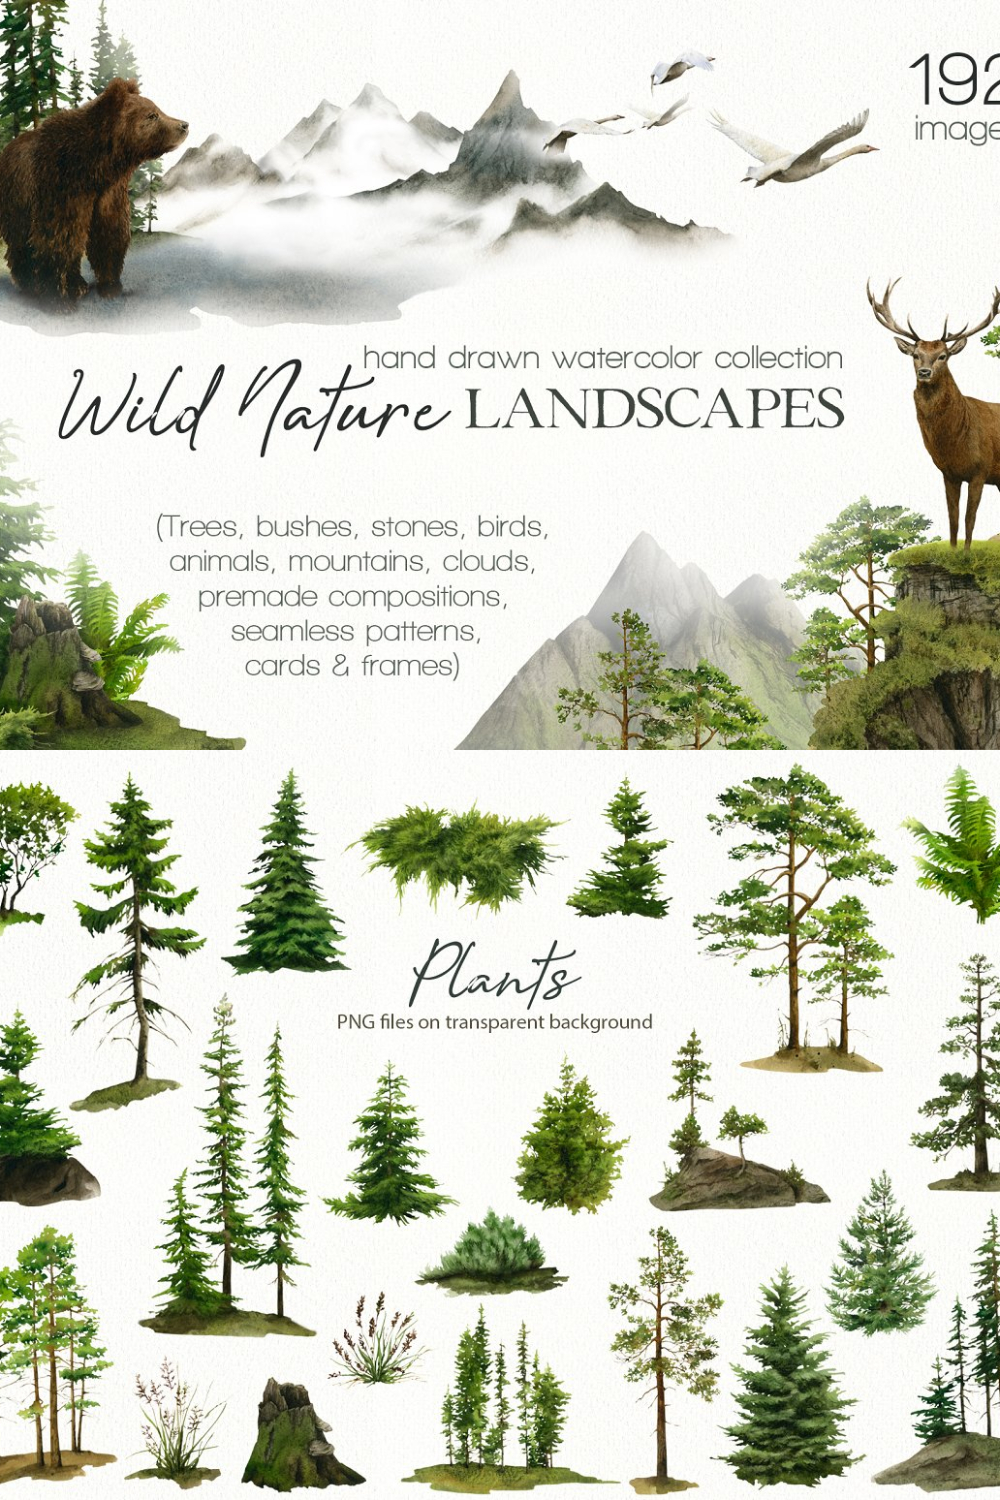 Wild Nature Landscapes Watercolor - Pinterest.